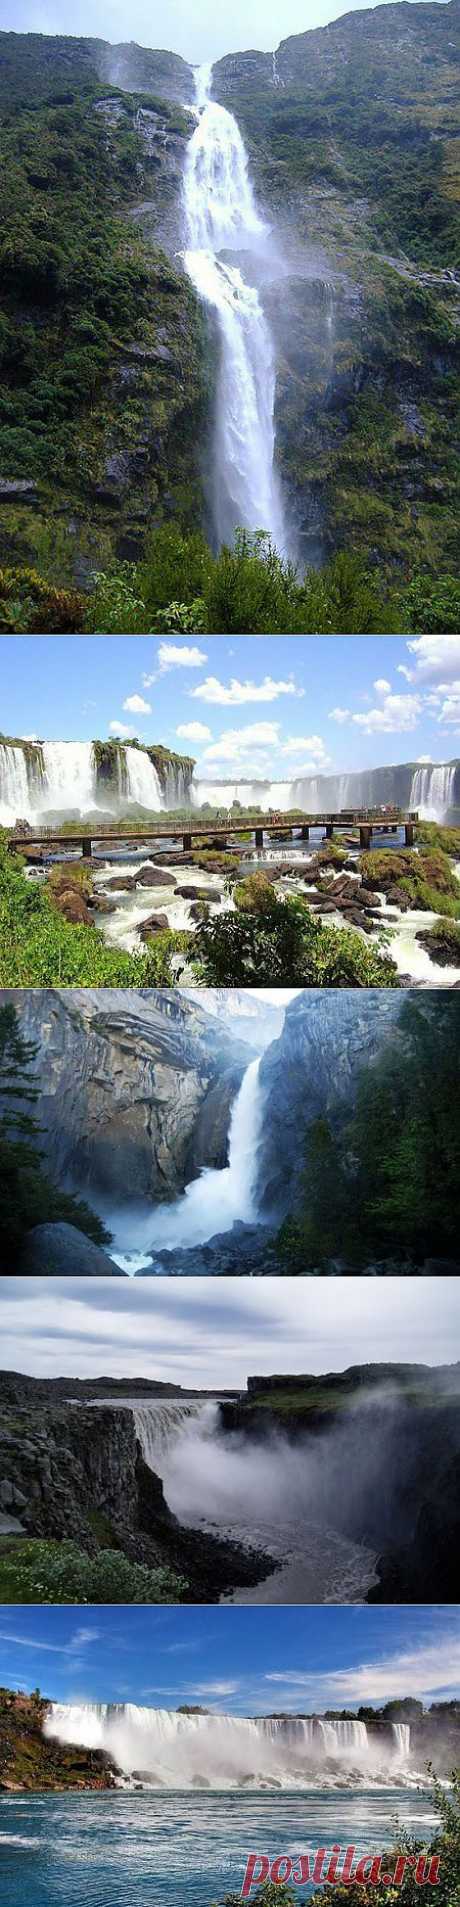 Водопады мира: самые красивые и известные | Красиво, интересно, удивительно